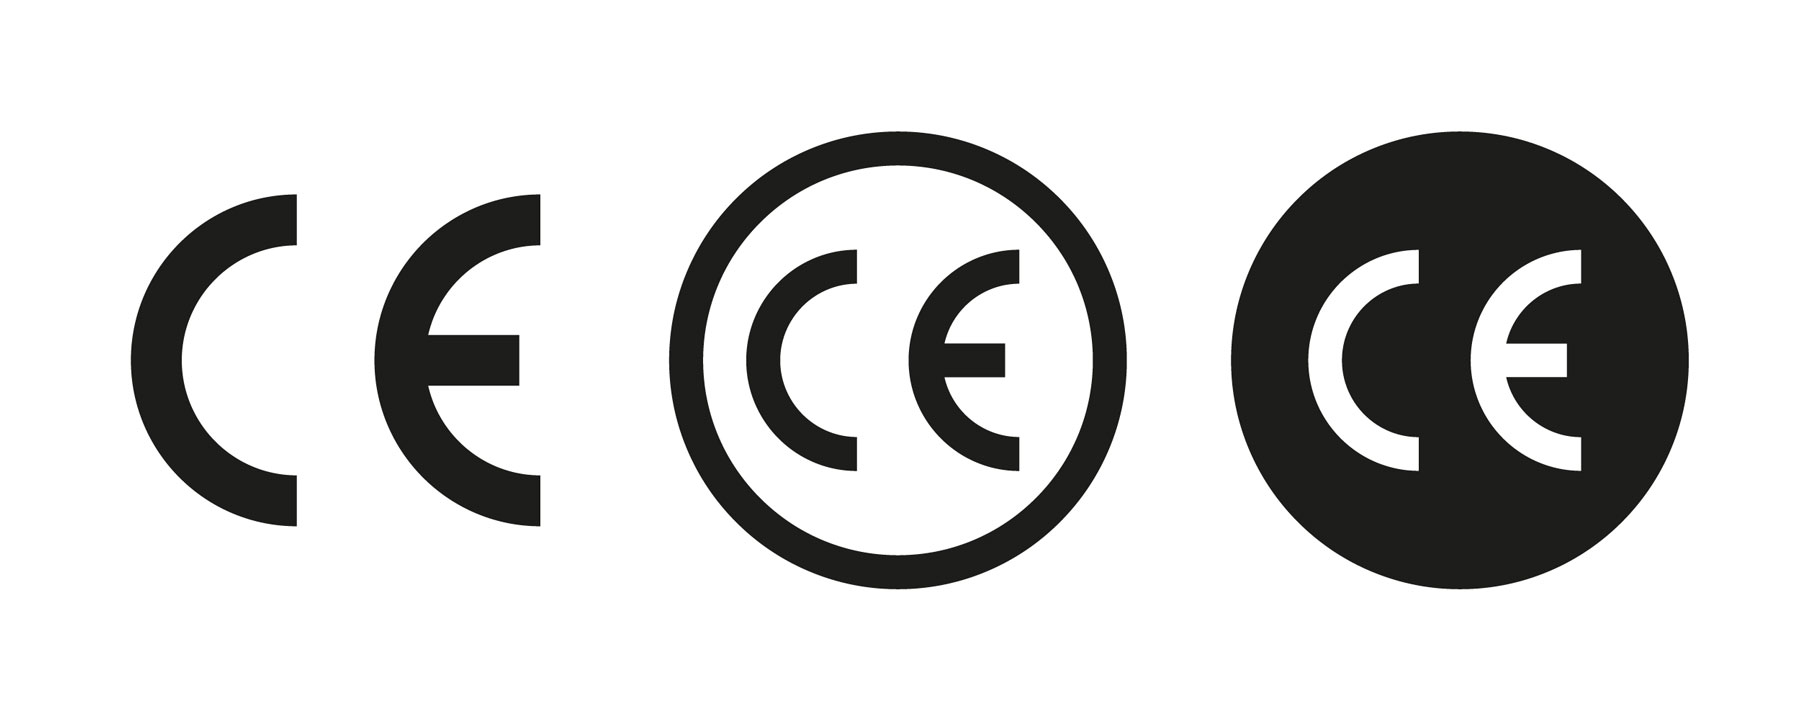 Značka CE - „Conformité Européenne“ (CE) - francouzsky „evropská shoda“, nebo také „EU Declaration of Conformity“ (DoC)